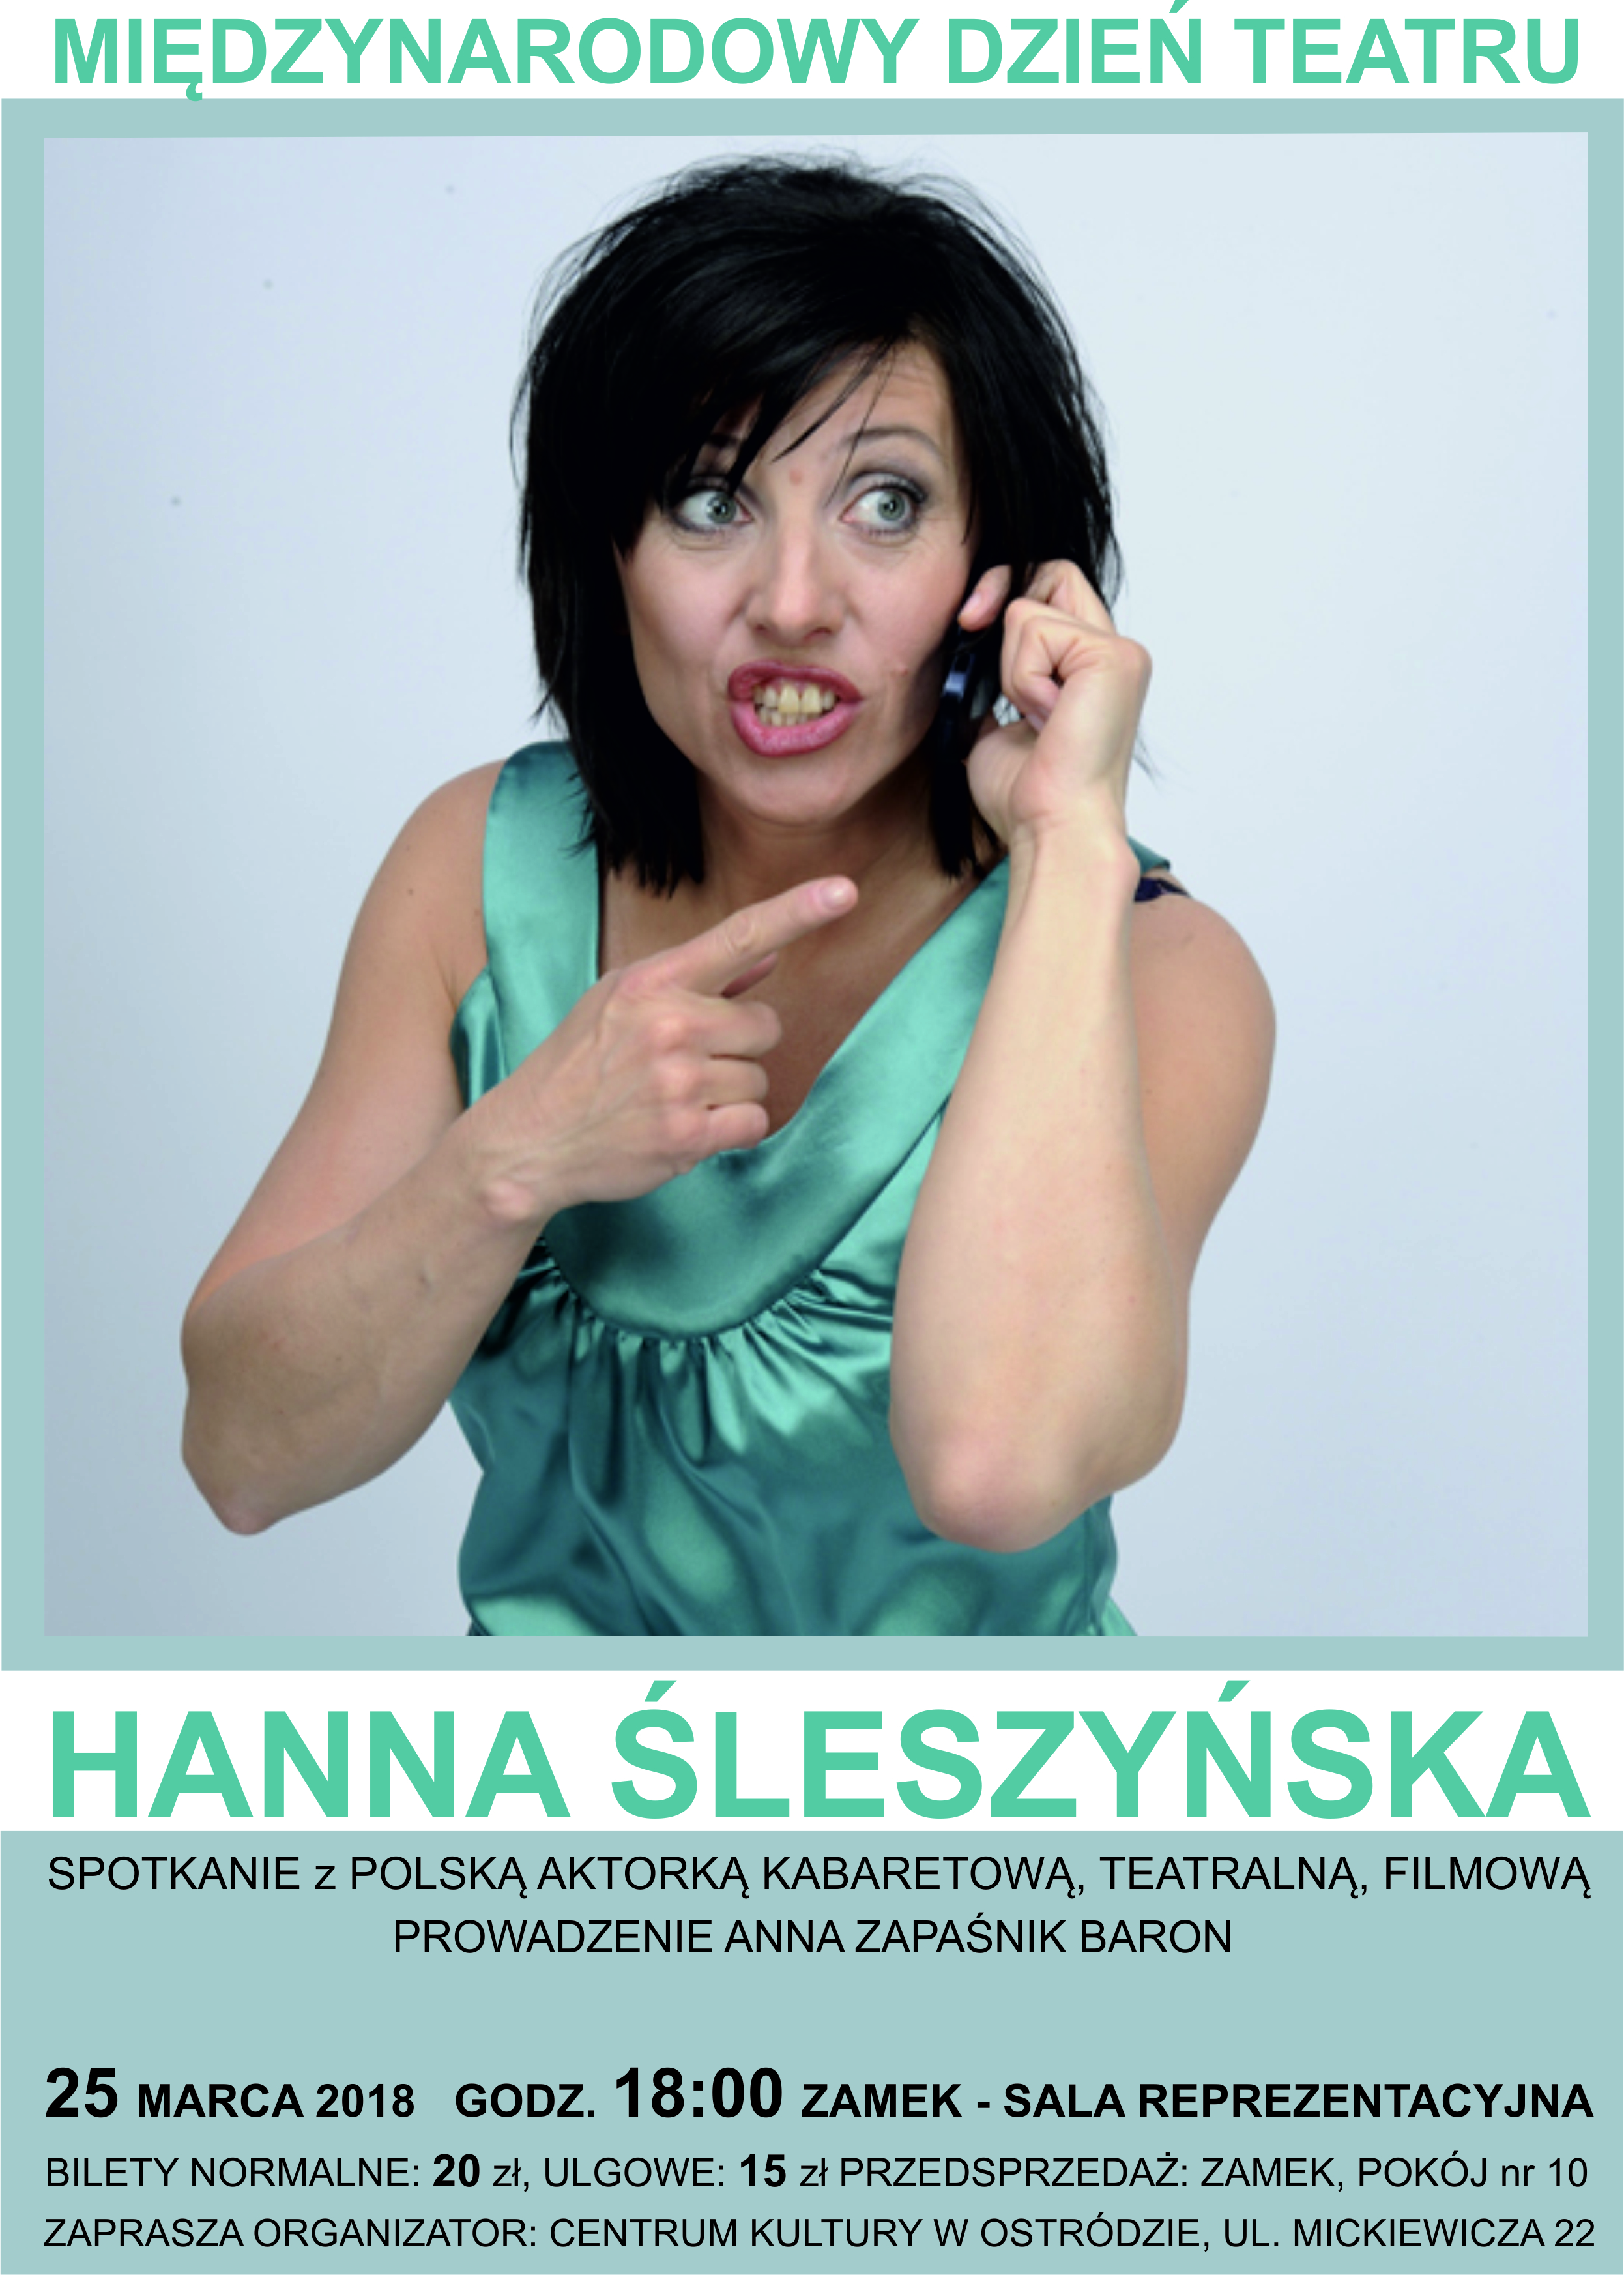 Międzynarodowy Dzień Teatru-Hanna Śleszyńska